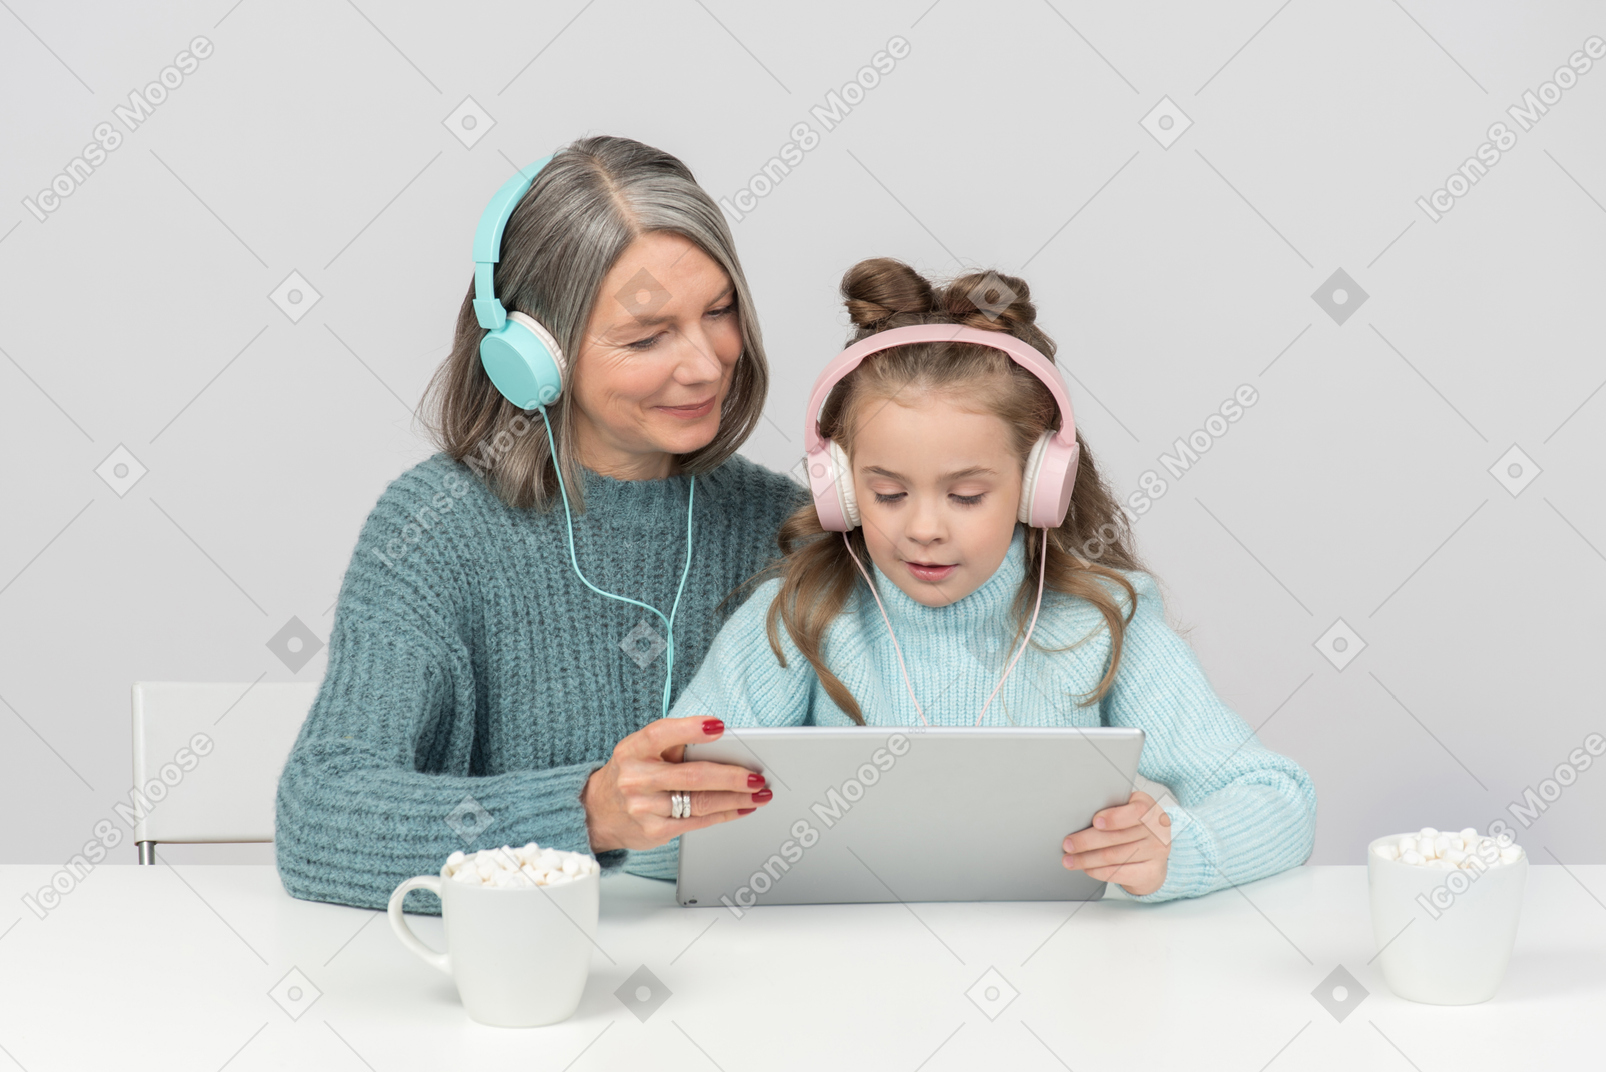 Grandmother and granddaughter using digital tablet together